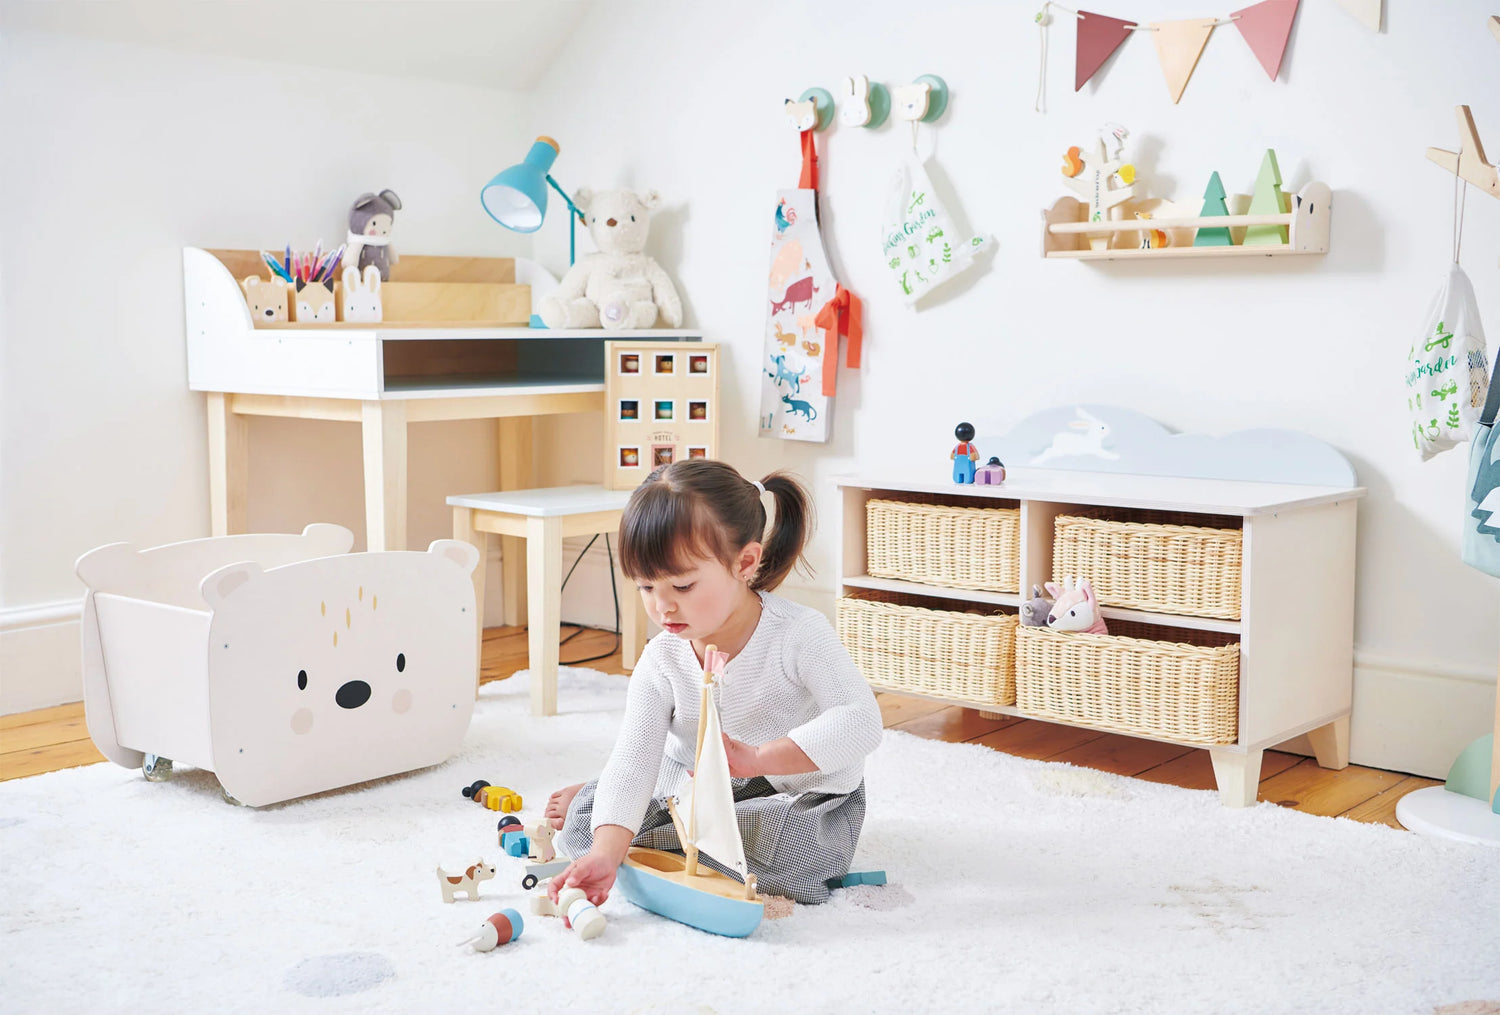 Décor de chambre d'enfants Tender Leaf, spécialiste du jouet en bois issu de forêt gérée durablement. Une petite fille s'amuse avec son bateau en bois dans sa chambre. 